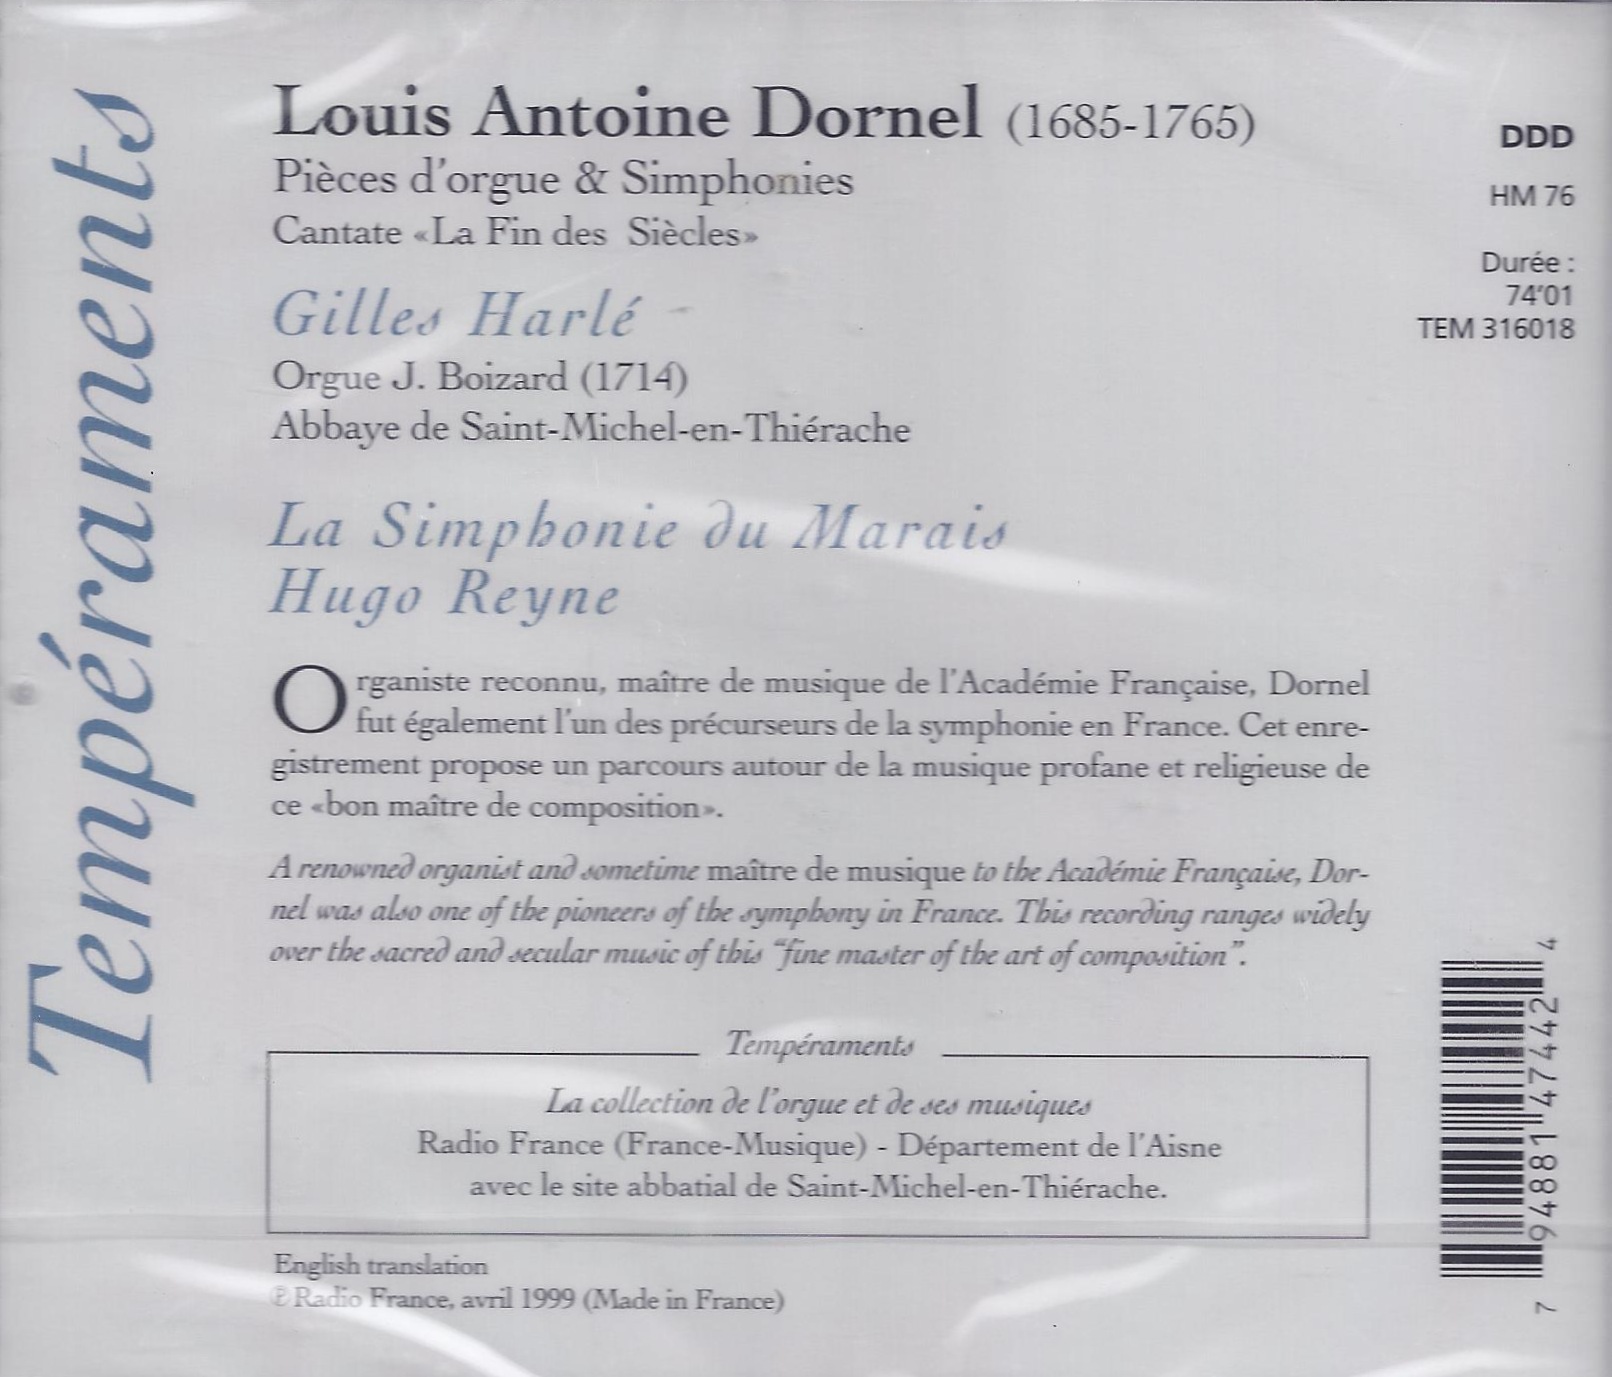 Dornel: Pieces d'orgues & symphonies - slide-1